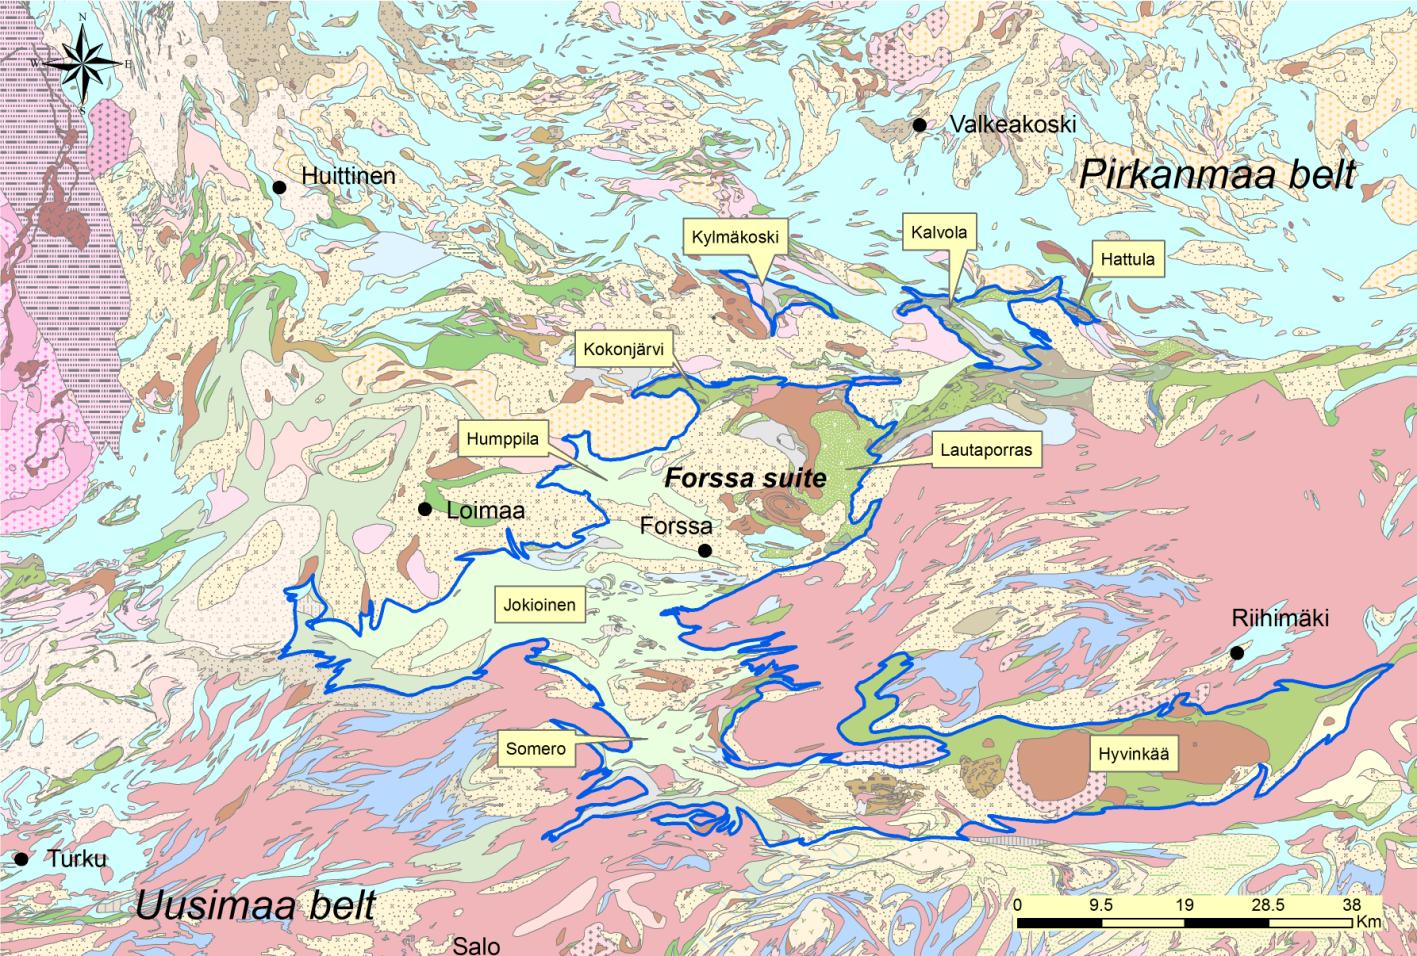 7 basalteista ryoliitteihin, andesiitittien ollessa vallitsevia. Poikkeuksena ovat seurueen itäosassa Forssan gabron yhteydessä enemmistönä olevat Lautaportaan basalttiset vulkaniitit.